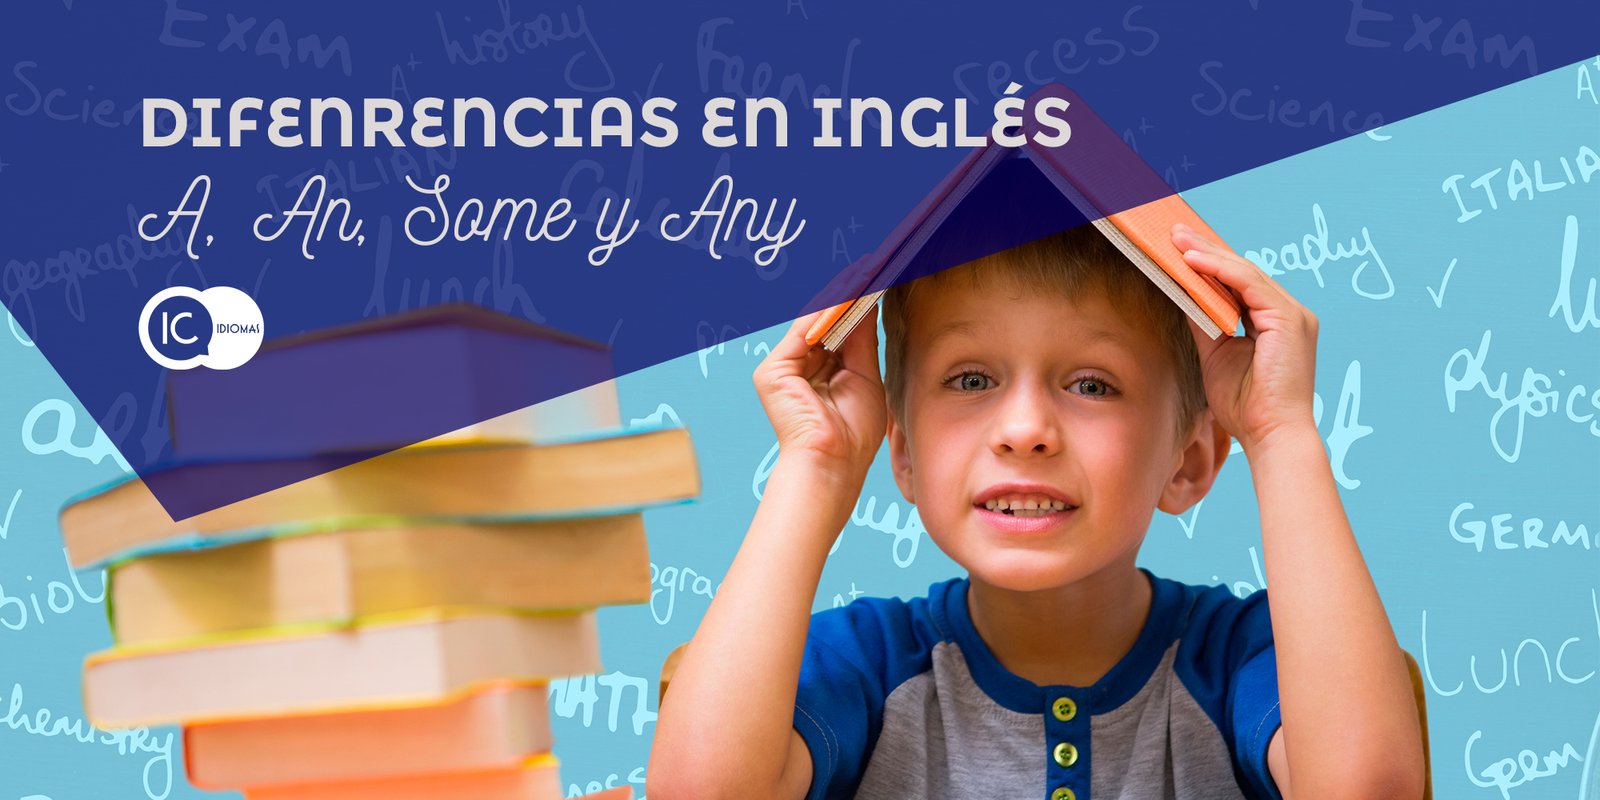 Ejercicios De Some Y Any En Ingles Para Niños